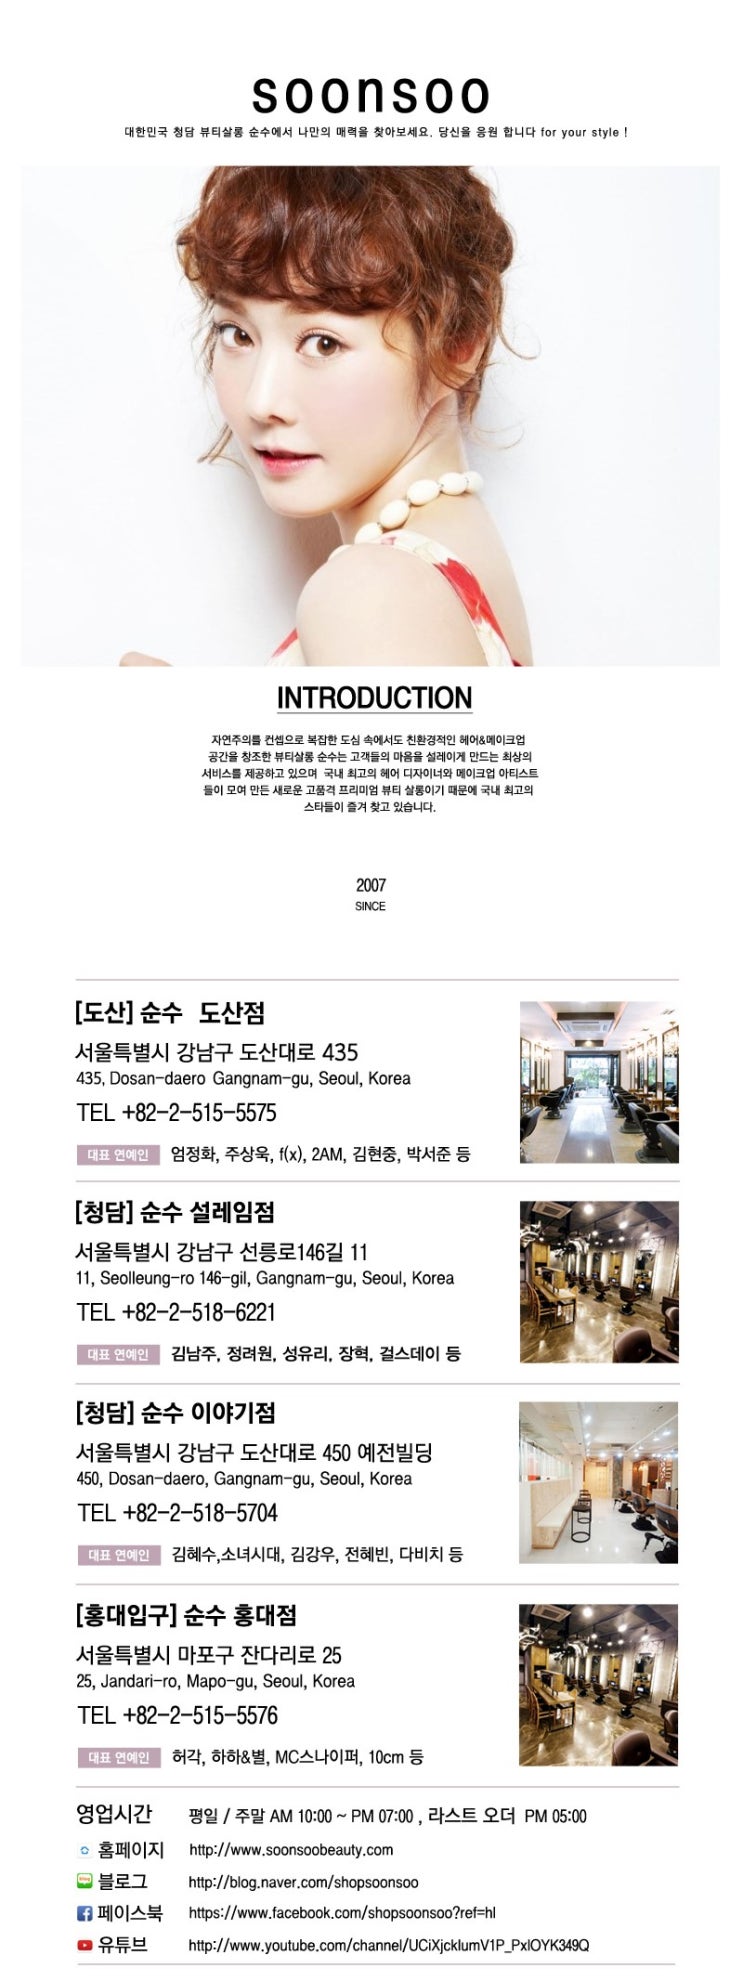 순수 INFO :: 한국어 소개서